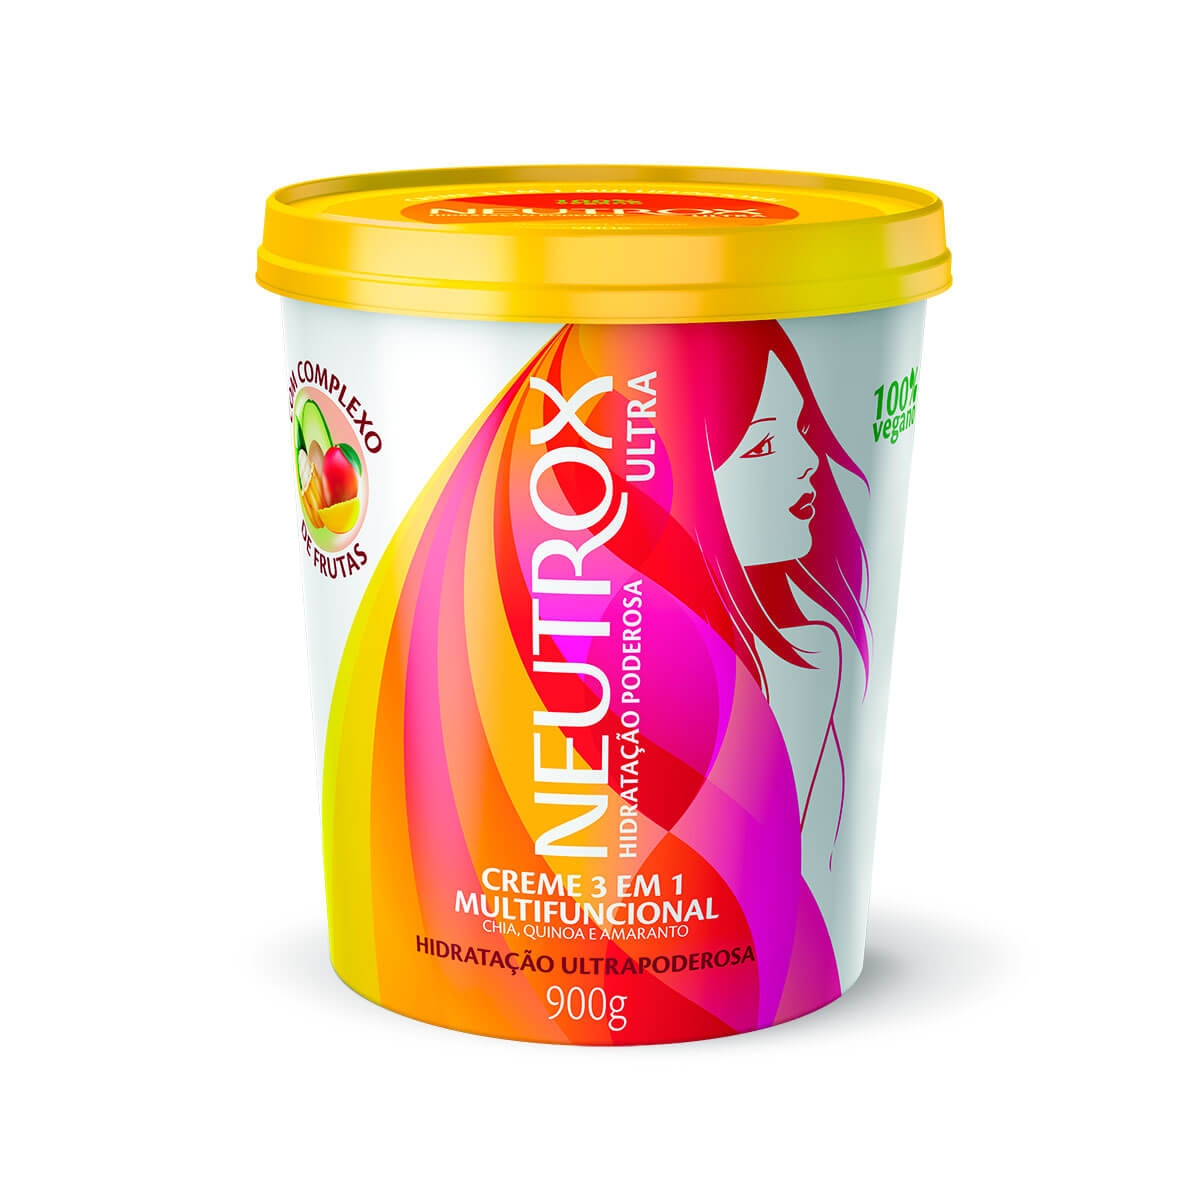 Creme 3 em 1 Multifuncional Neutrox Hidratação Ultrapoderosa 100% Vegano com 900g 900g